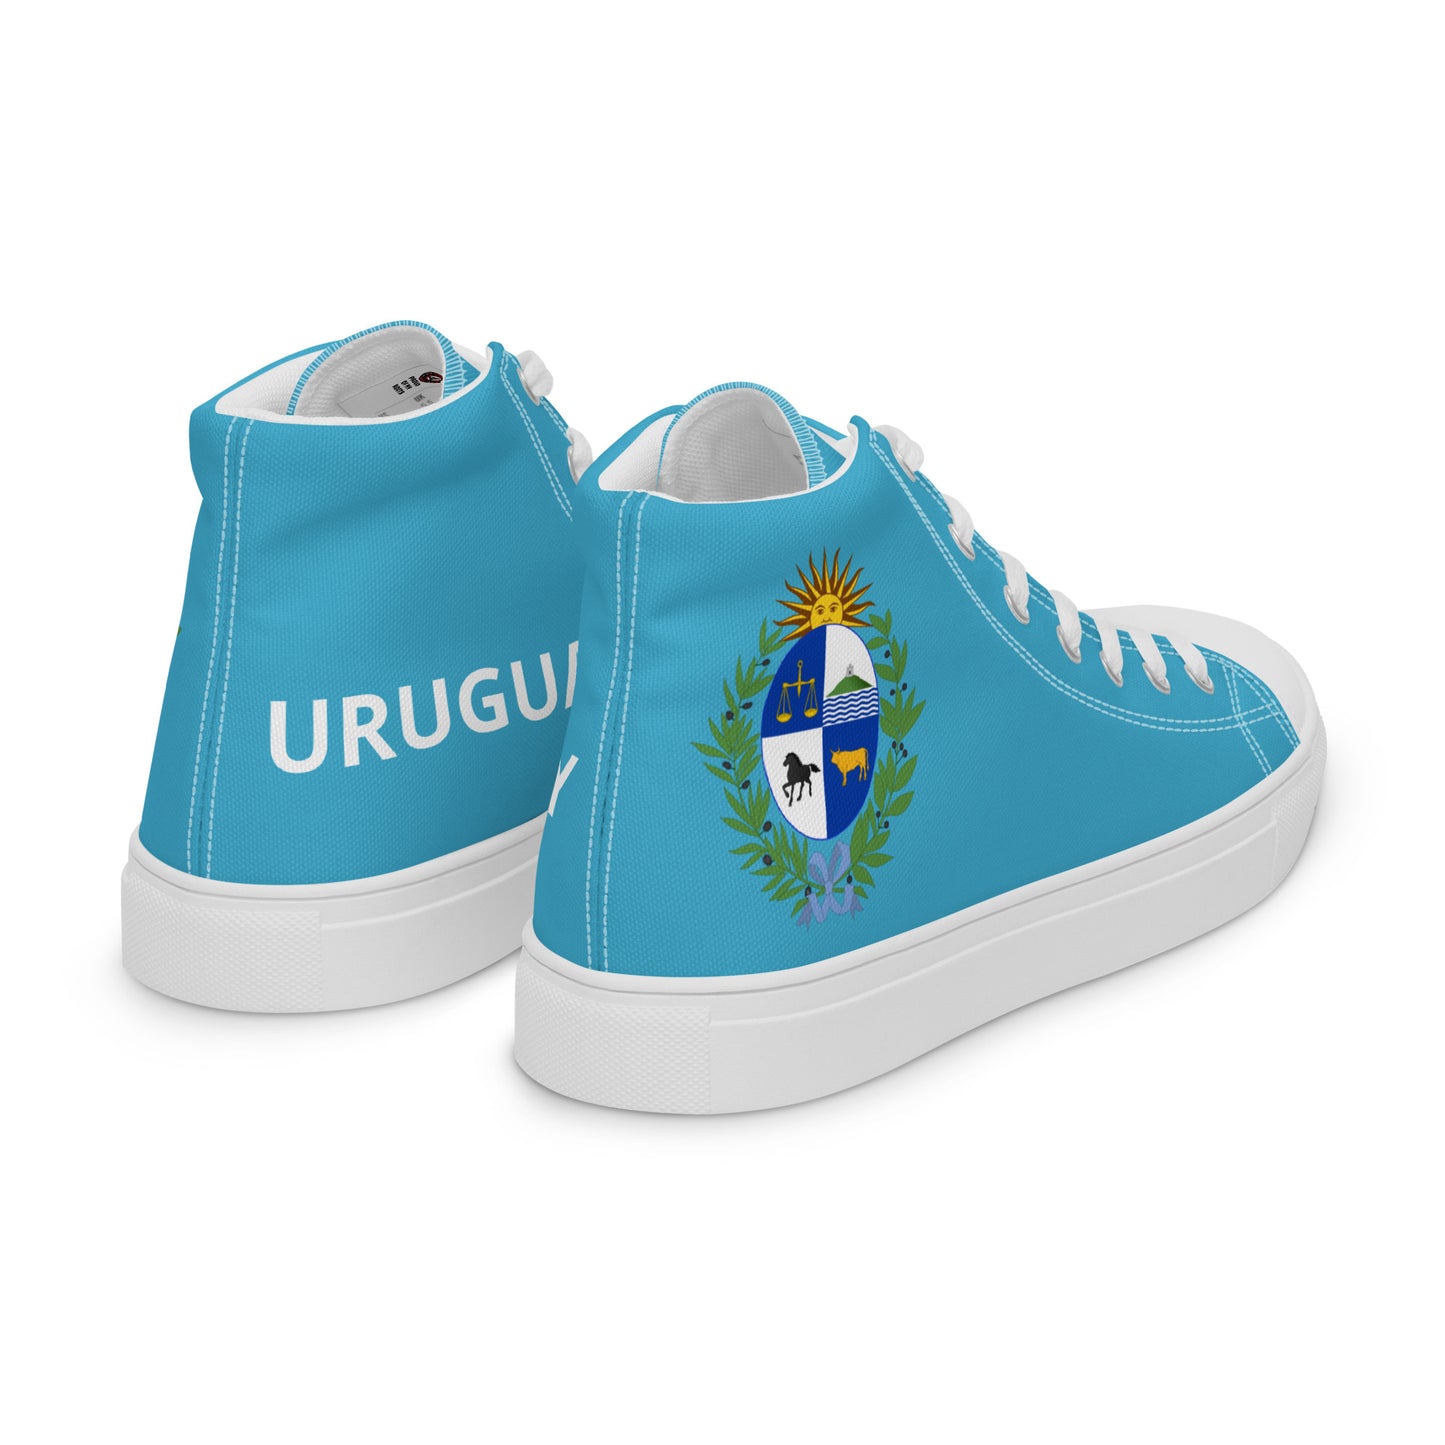 Uruguay - Women - Sky - High top shoes